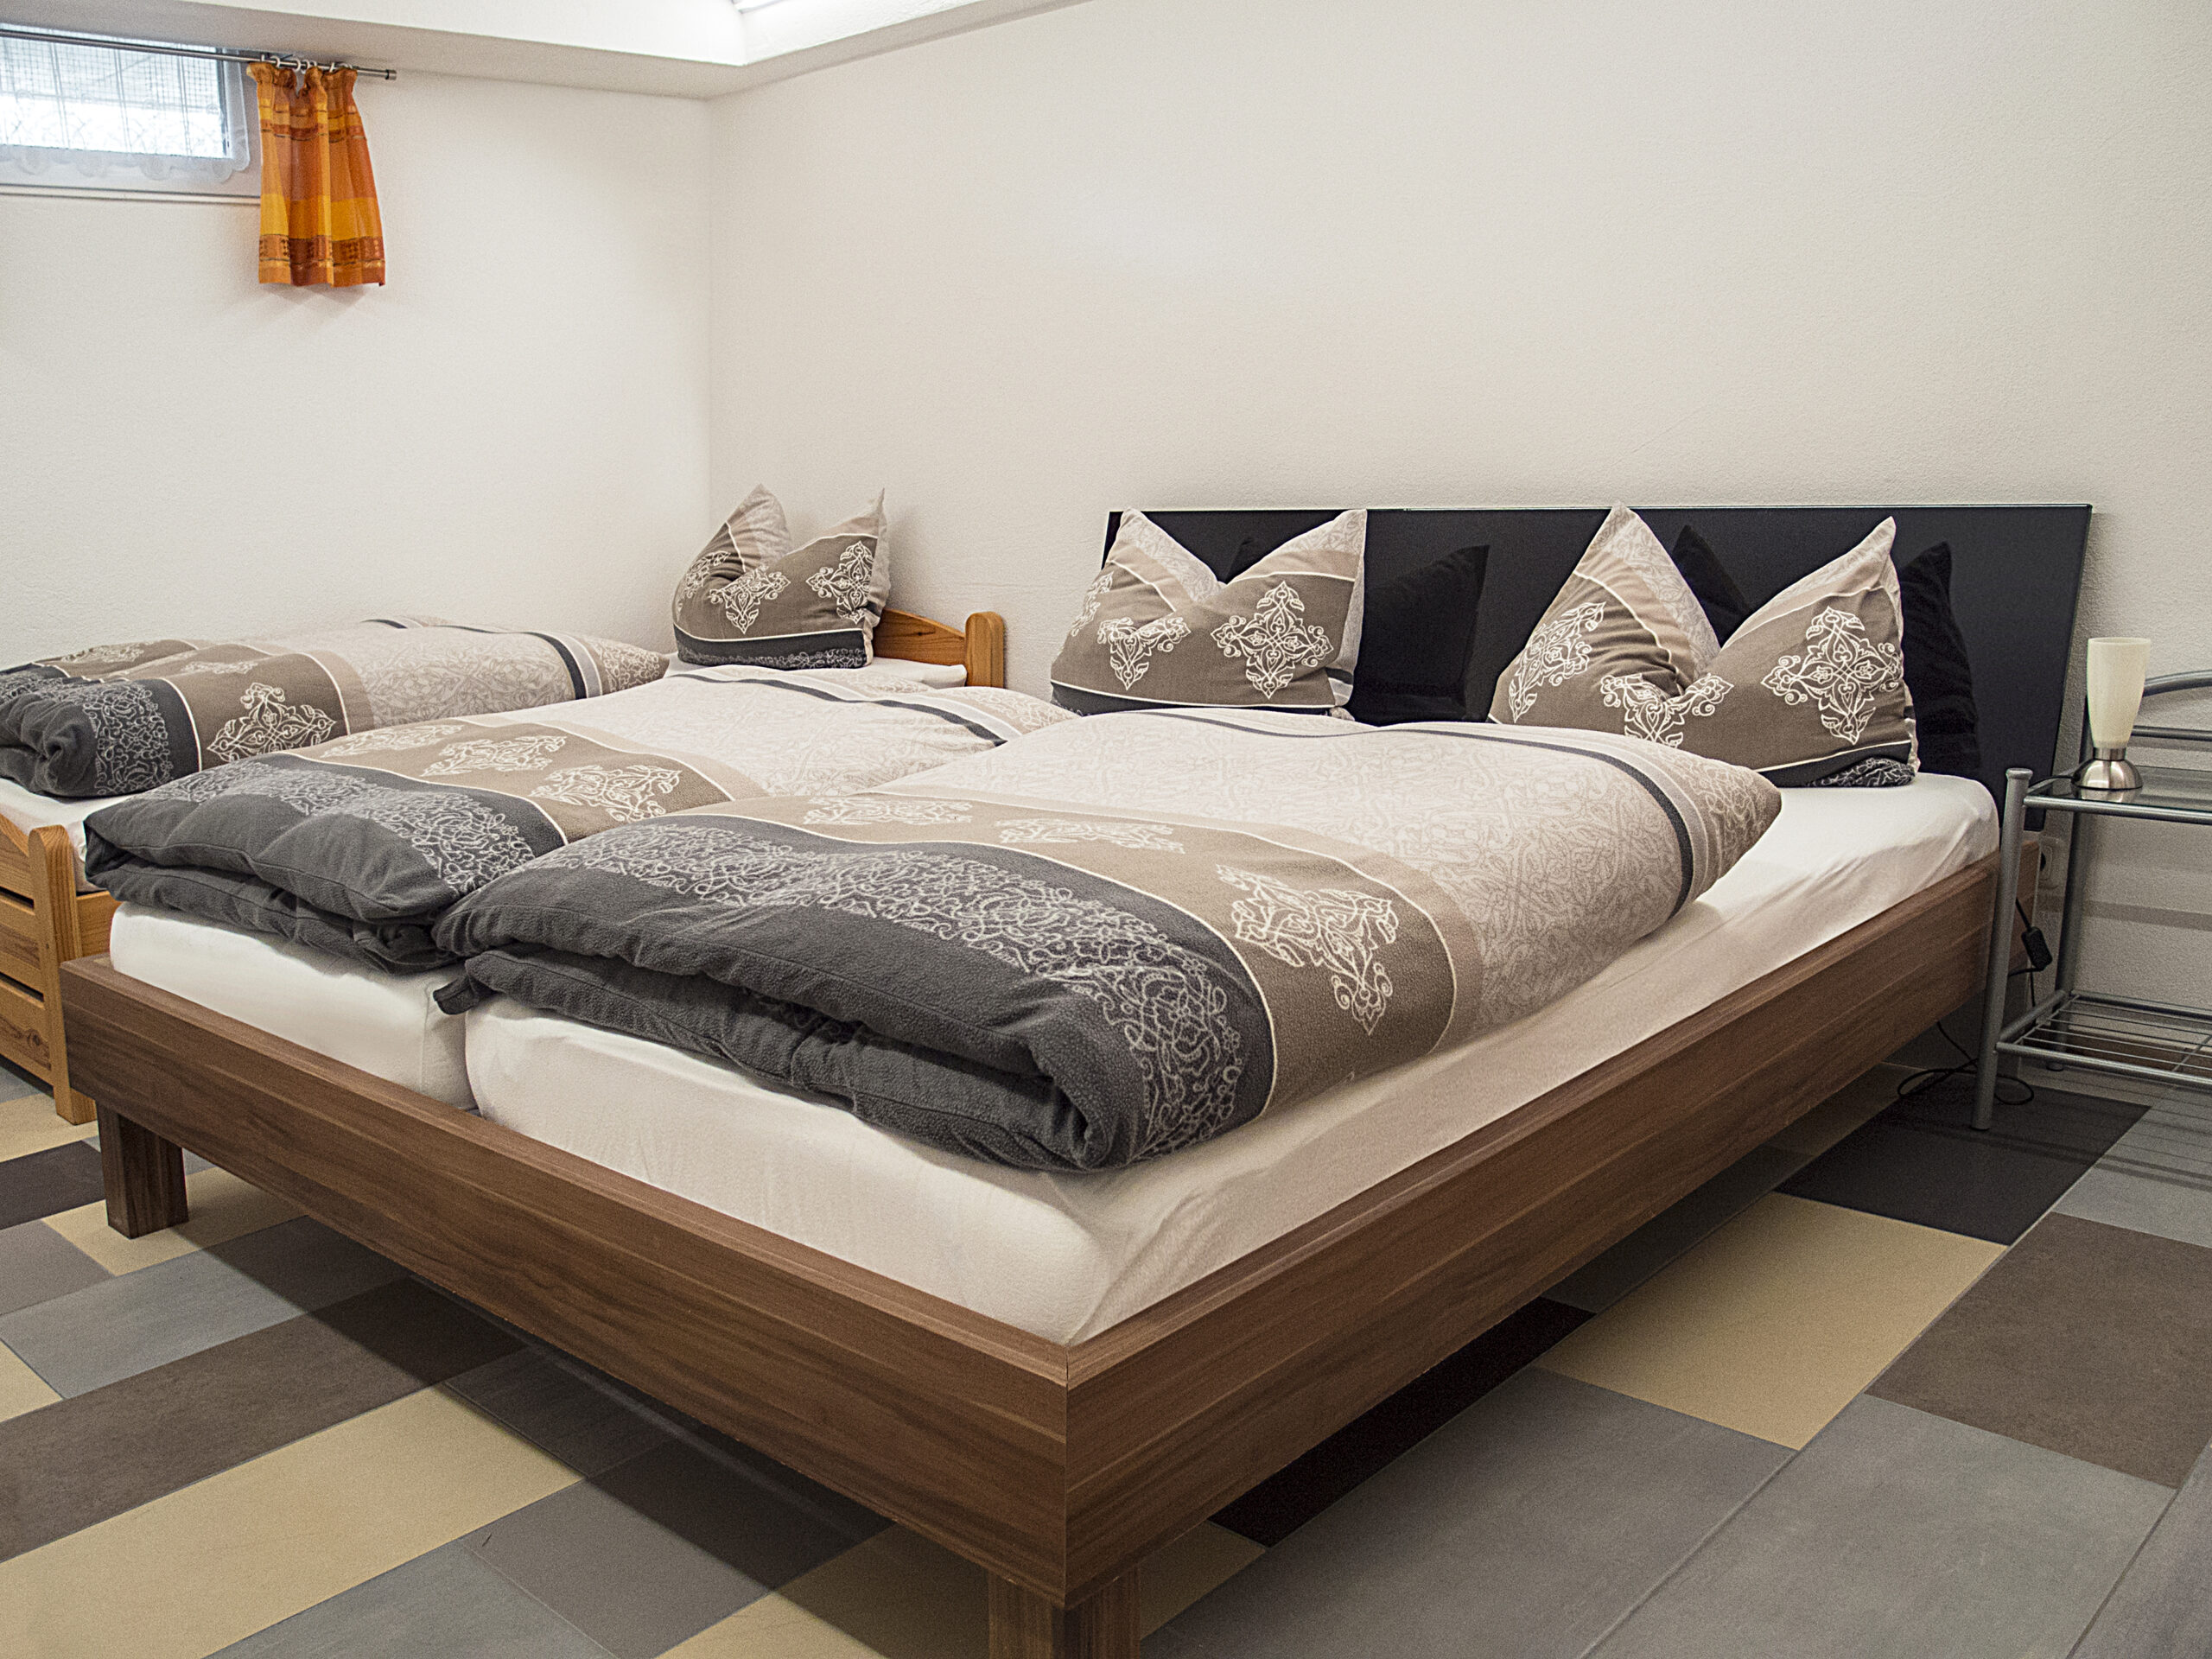 Keller-Ferienwohnung - Schlafzimmer mit Doppelbett und Einzelbett